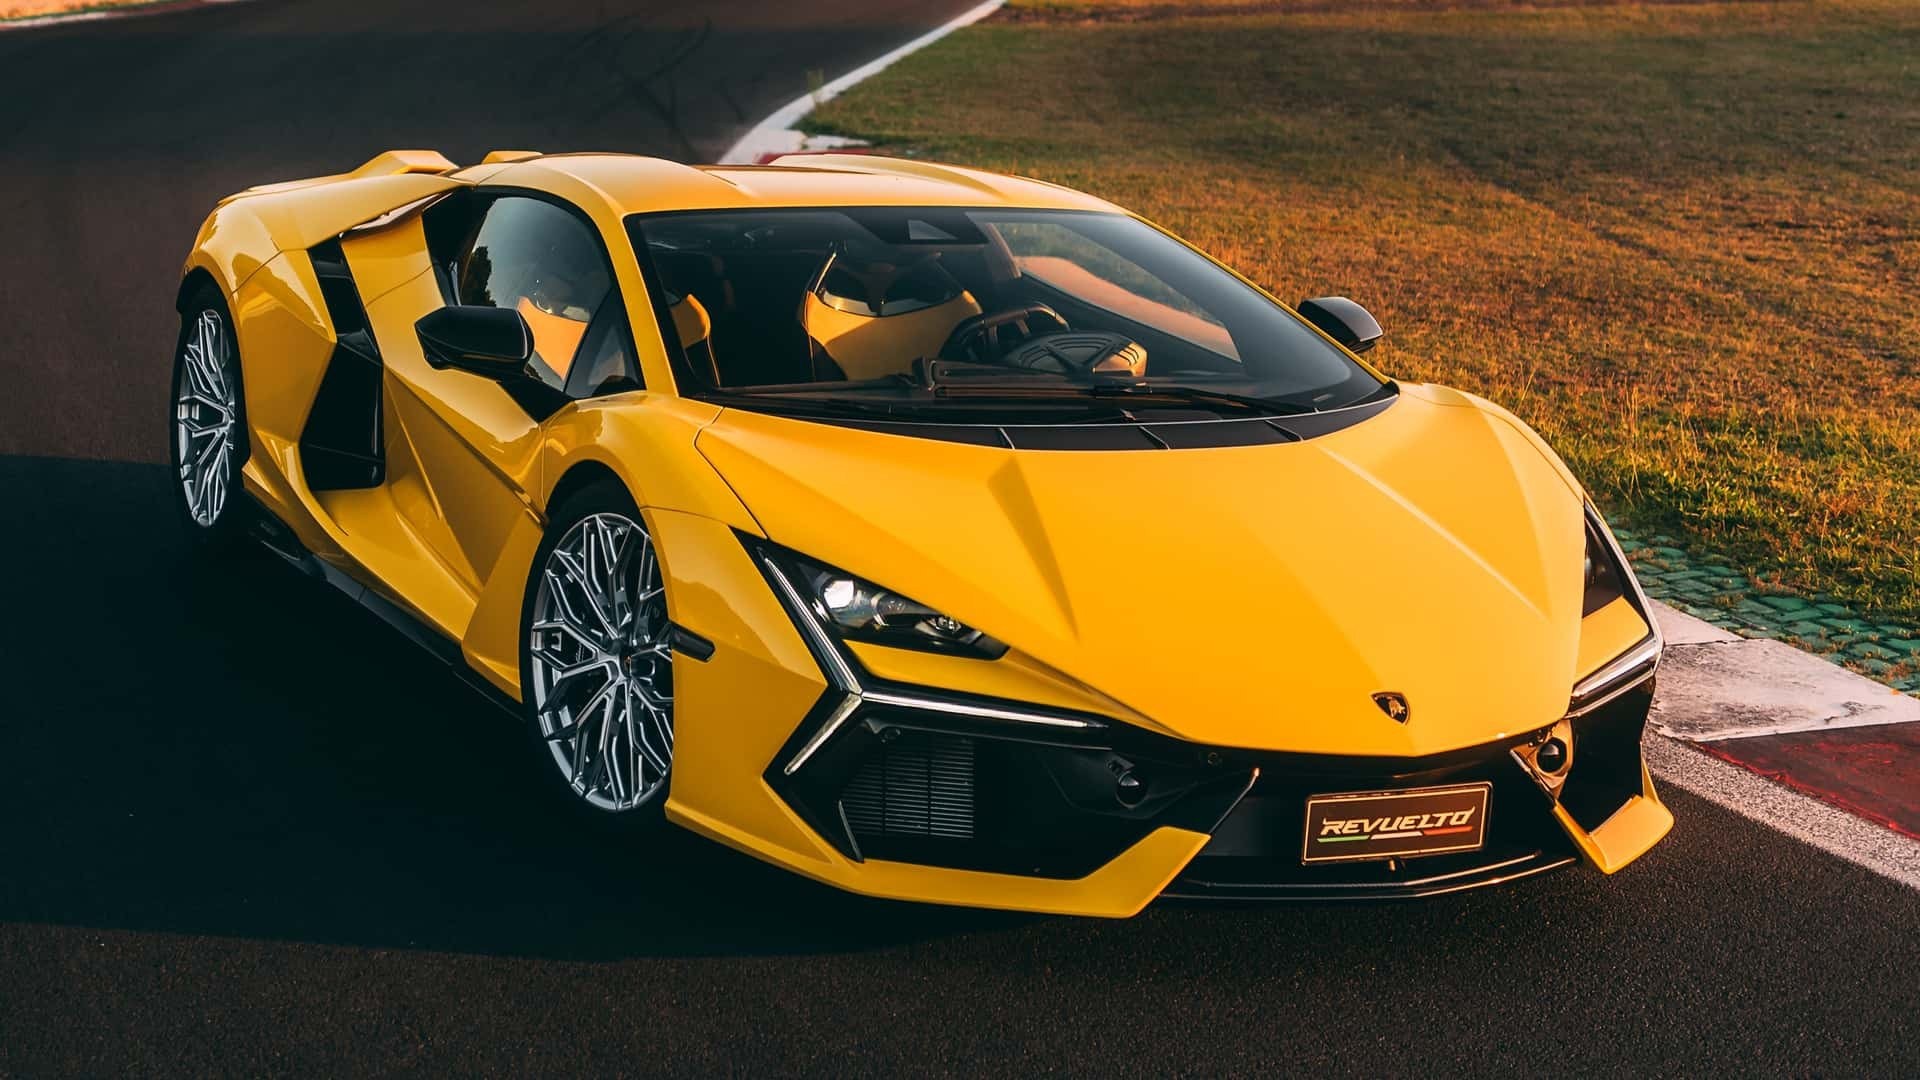 Lamborghini là hãng siêu xe có nguồn gốc từ Ý